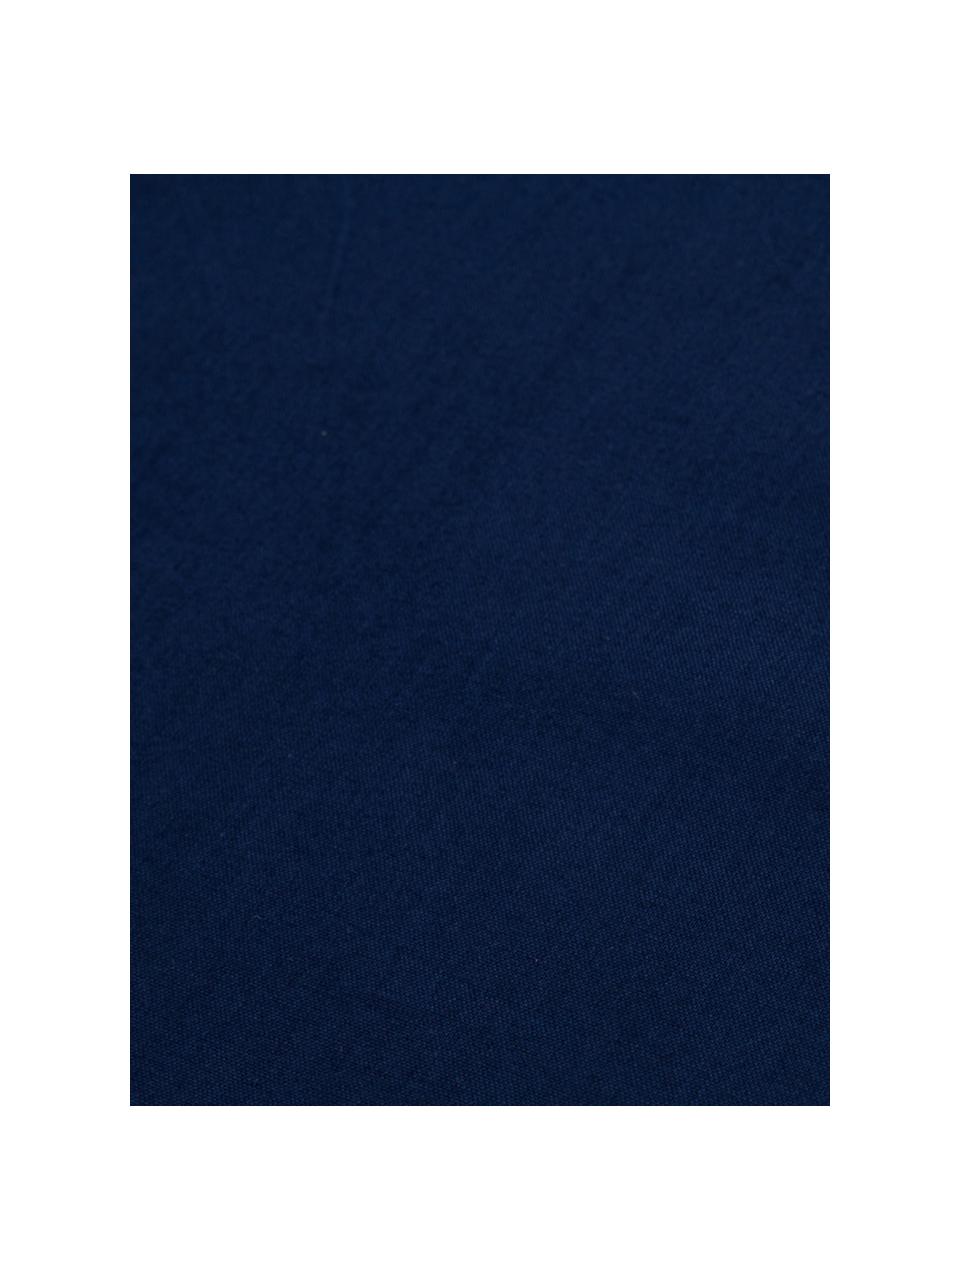 Set biancheria da letto con lenzuolo in cotone blu scuro Lenare, Fronte e retro: blu scuro, 150 x 290 cm + 1 federa 50 x 80 cm